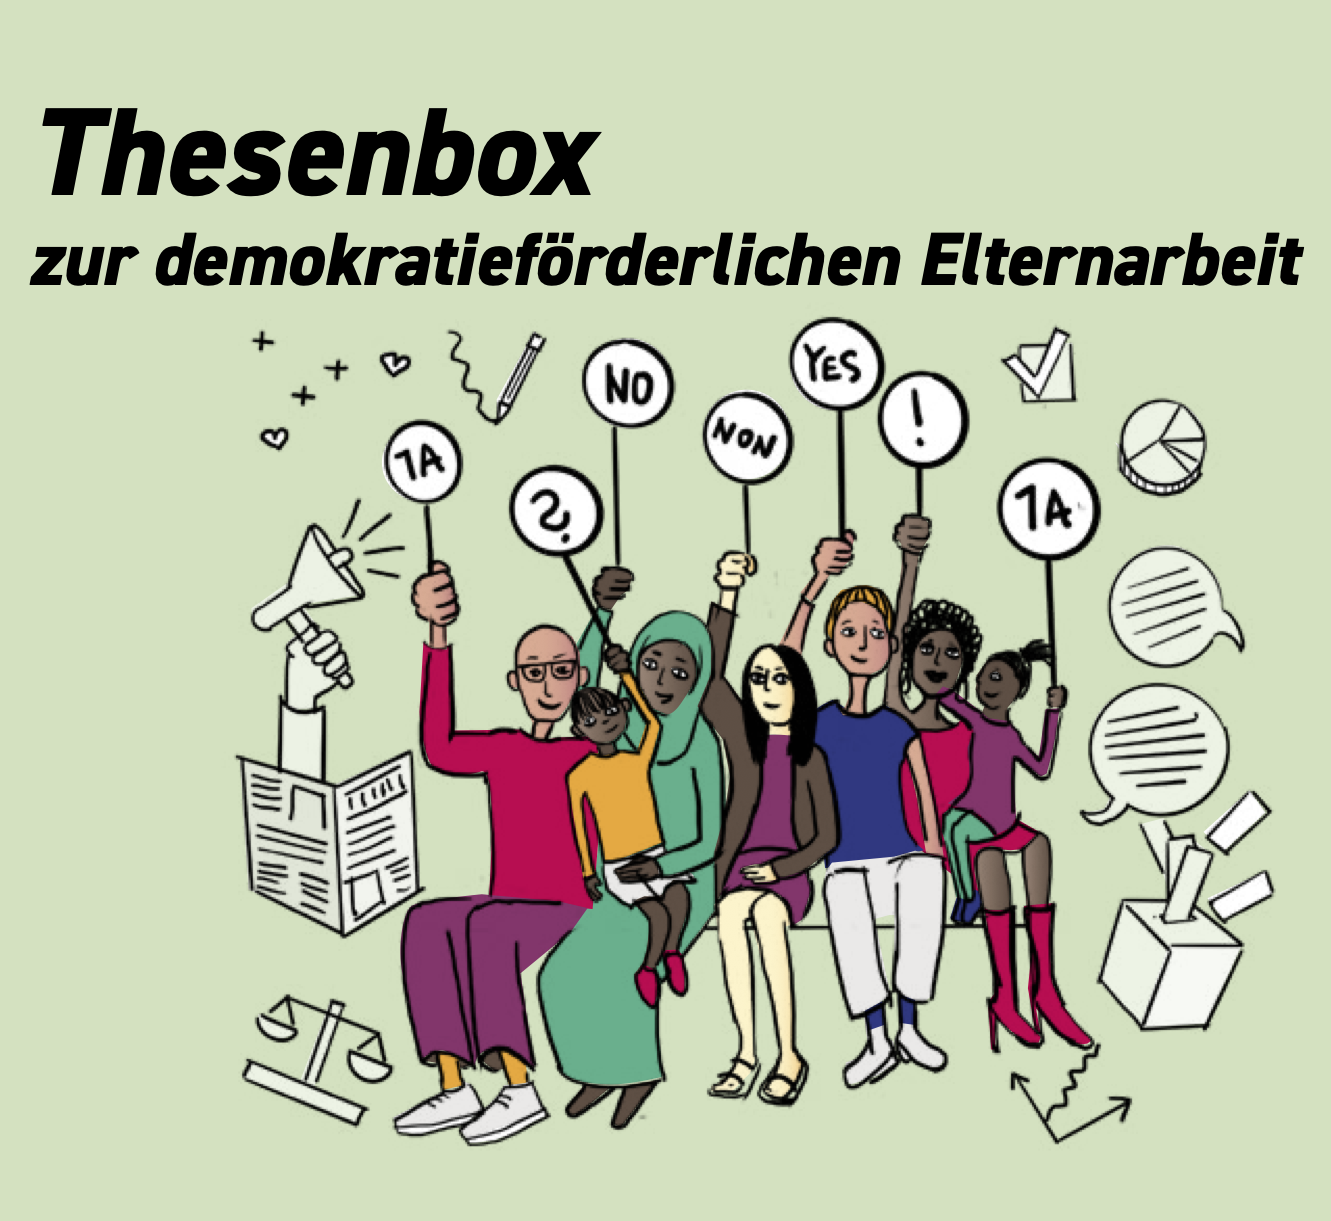 Cover der Thesenbox mit einer bunten Ansammlung von Menschen, mit Schildern, Zeitungen, Megaphone und Wahlboxen.